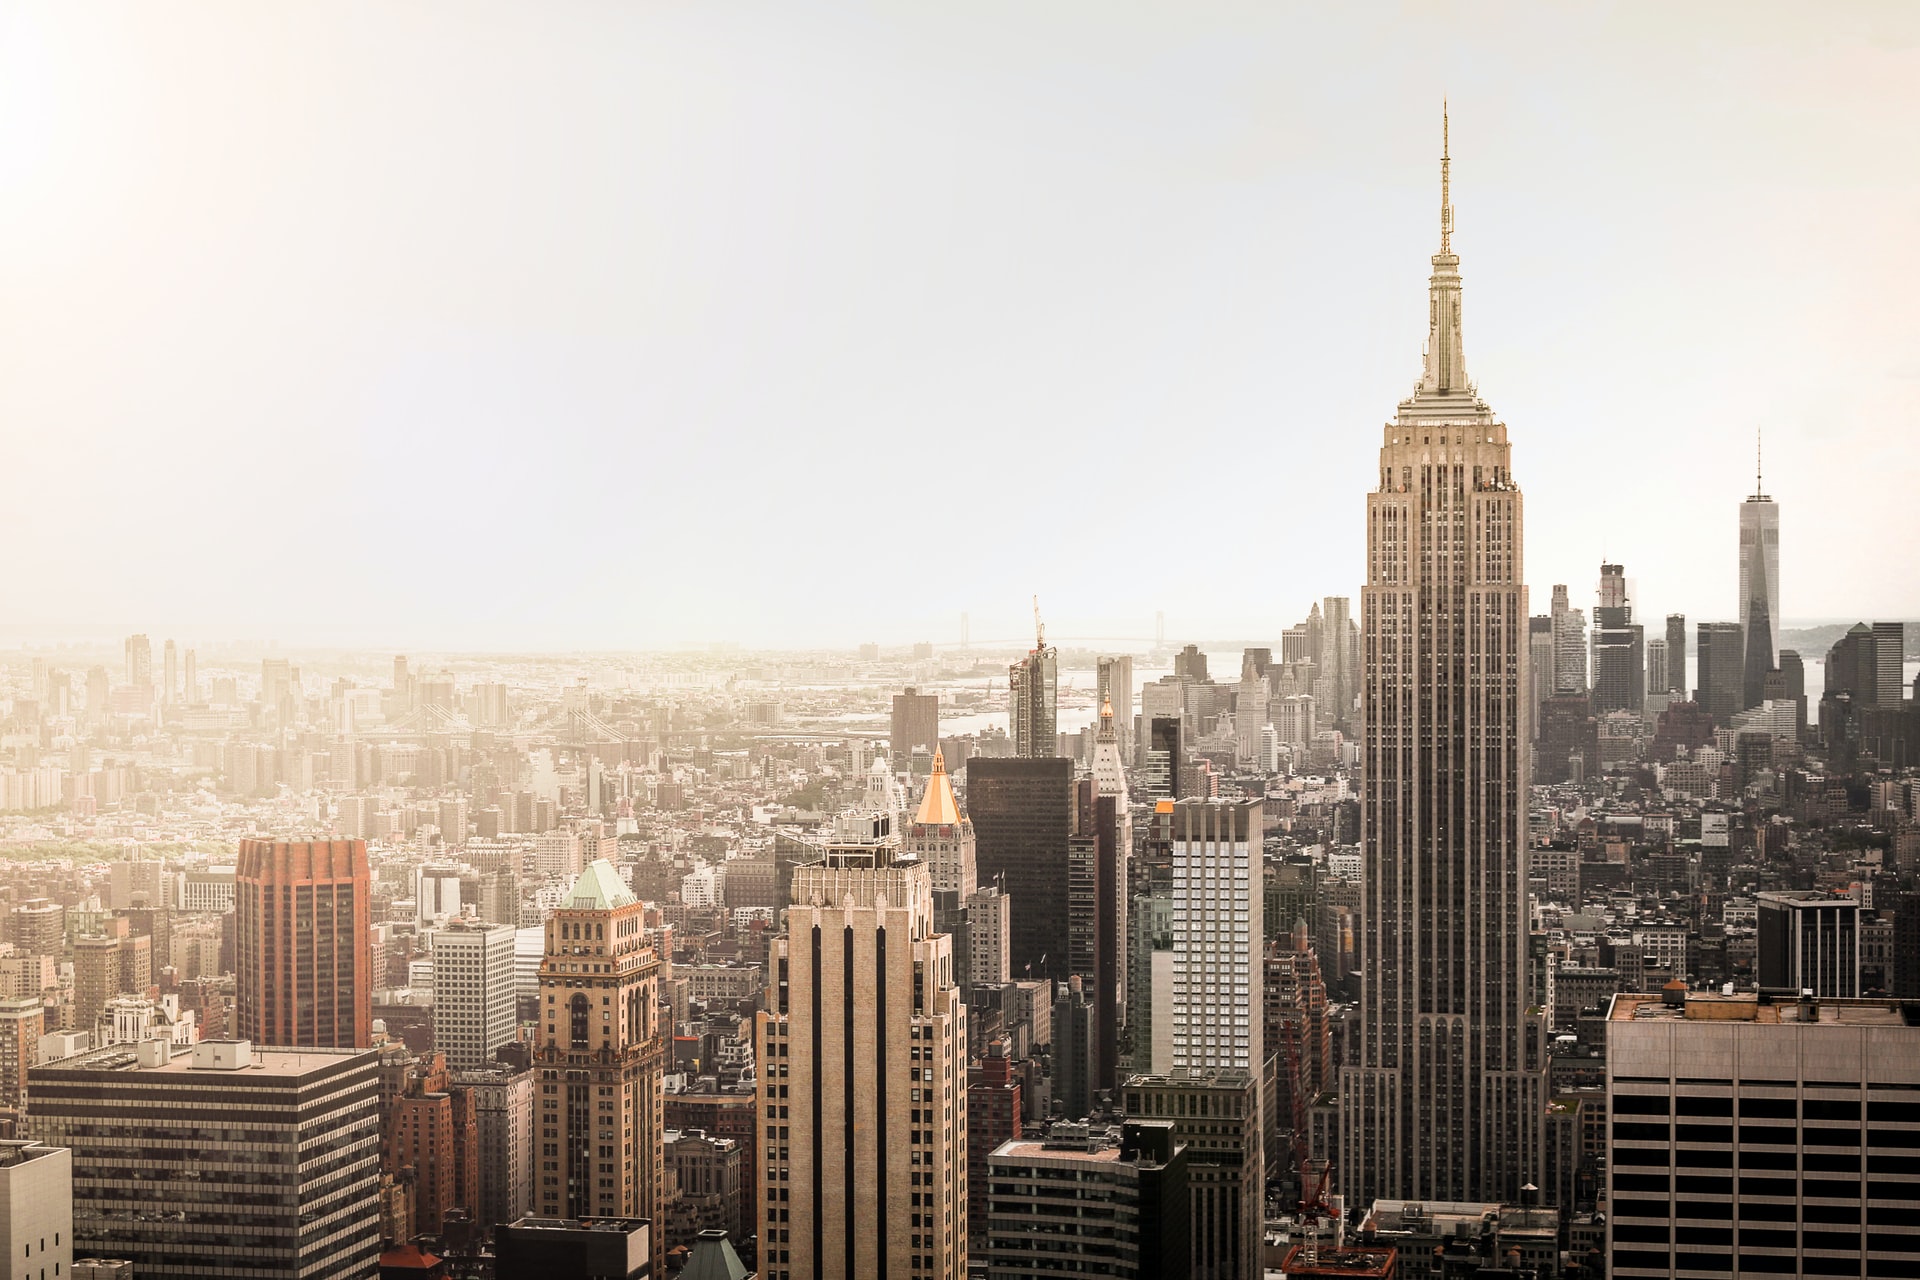 How to make your Manhattan dream come true?